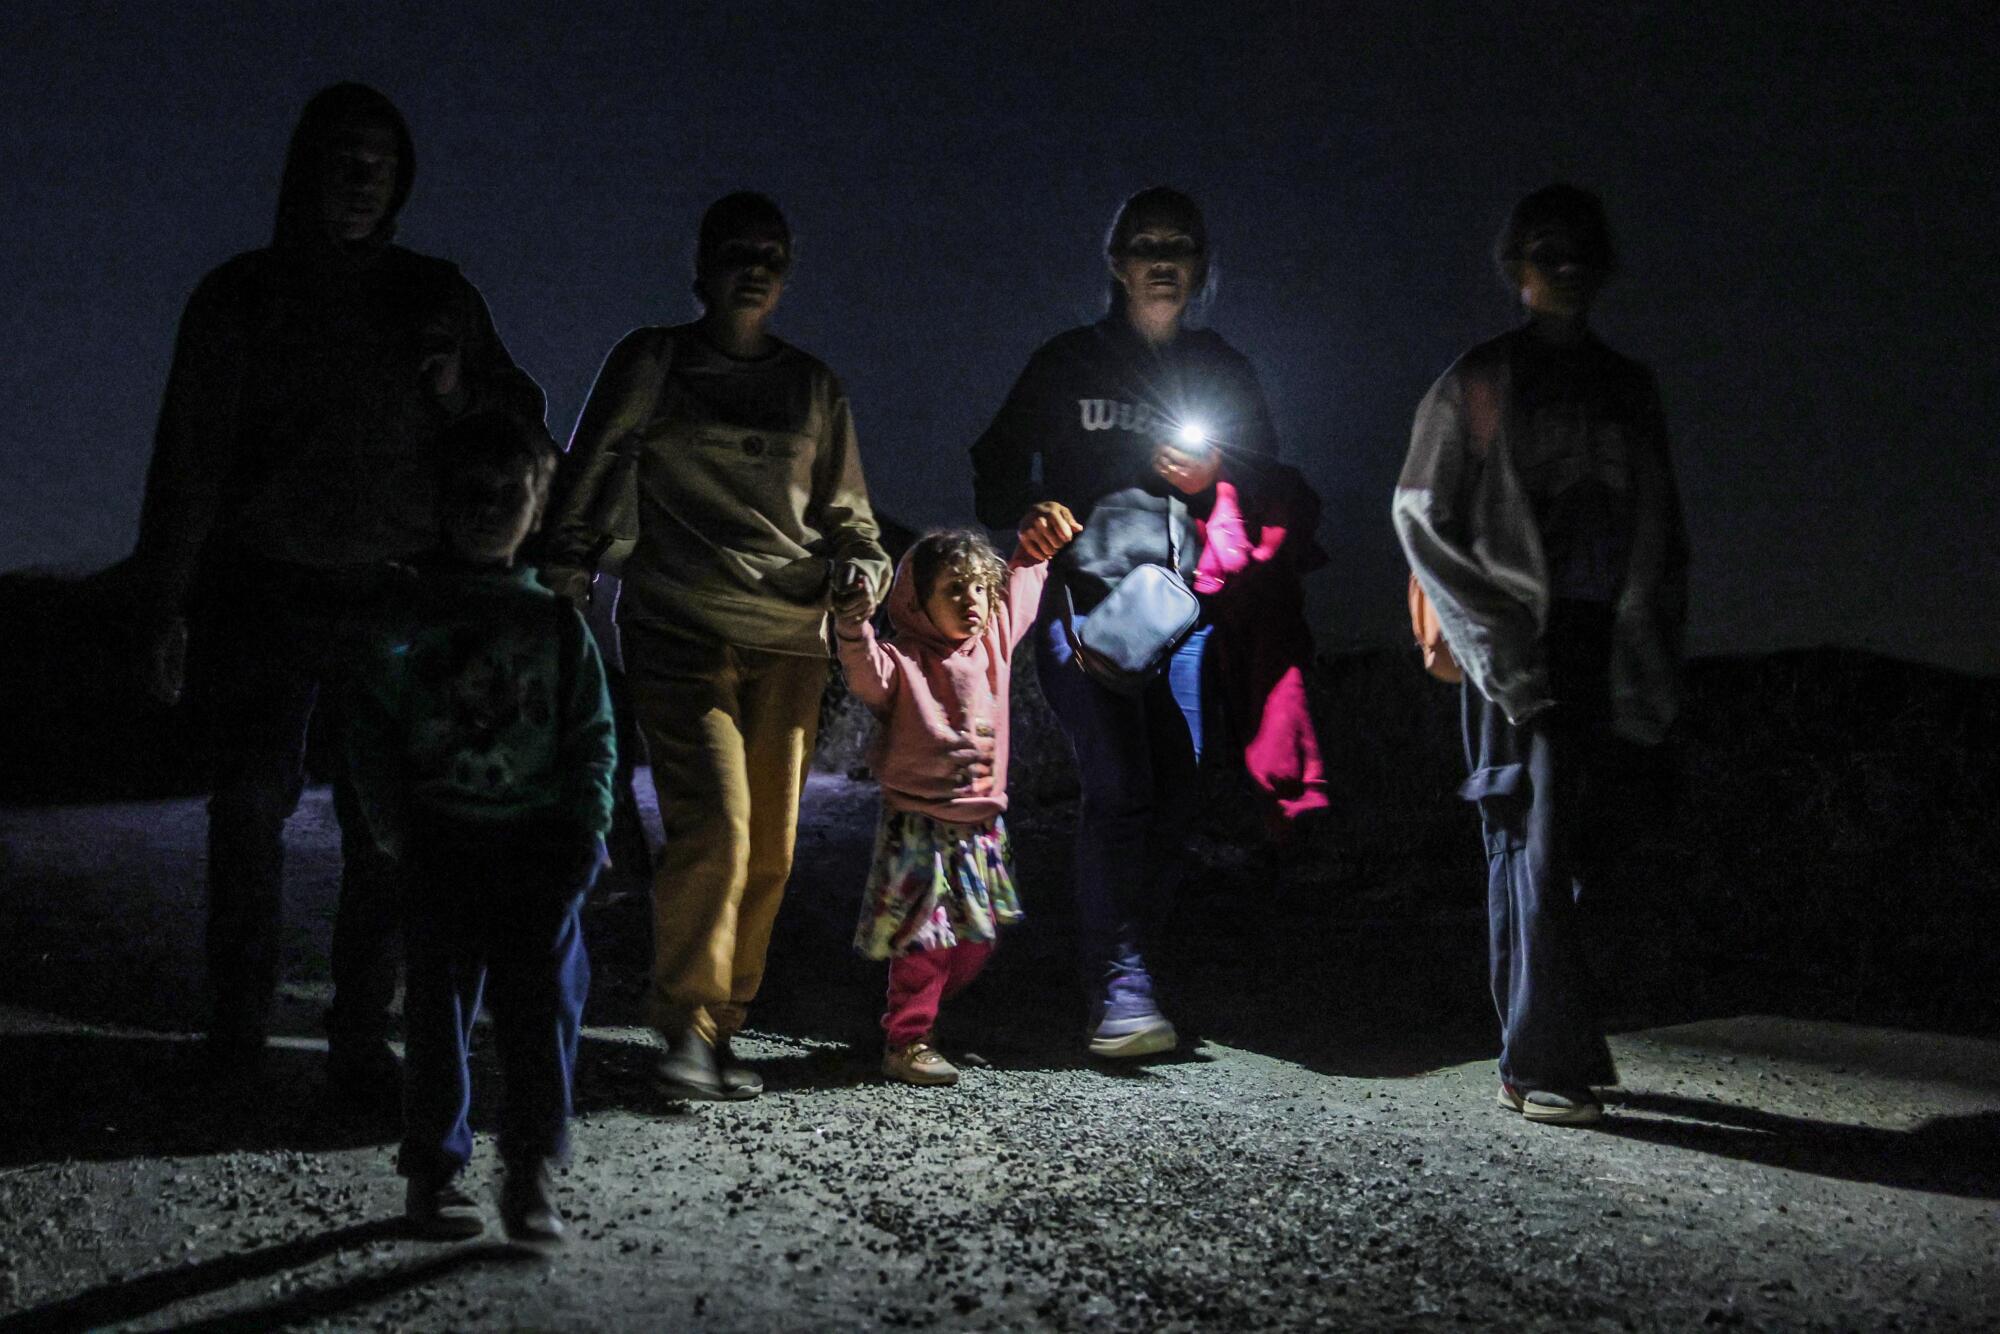 La caminata de una familia exhausta termina después de cruzar la frontera entre Estados Unidos y México, 9 horas después de cruzar.